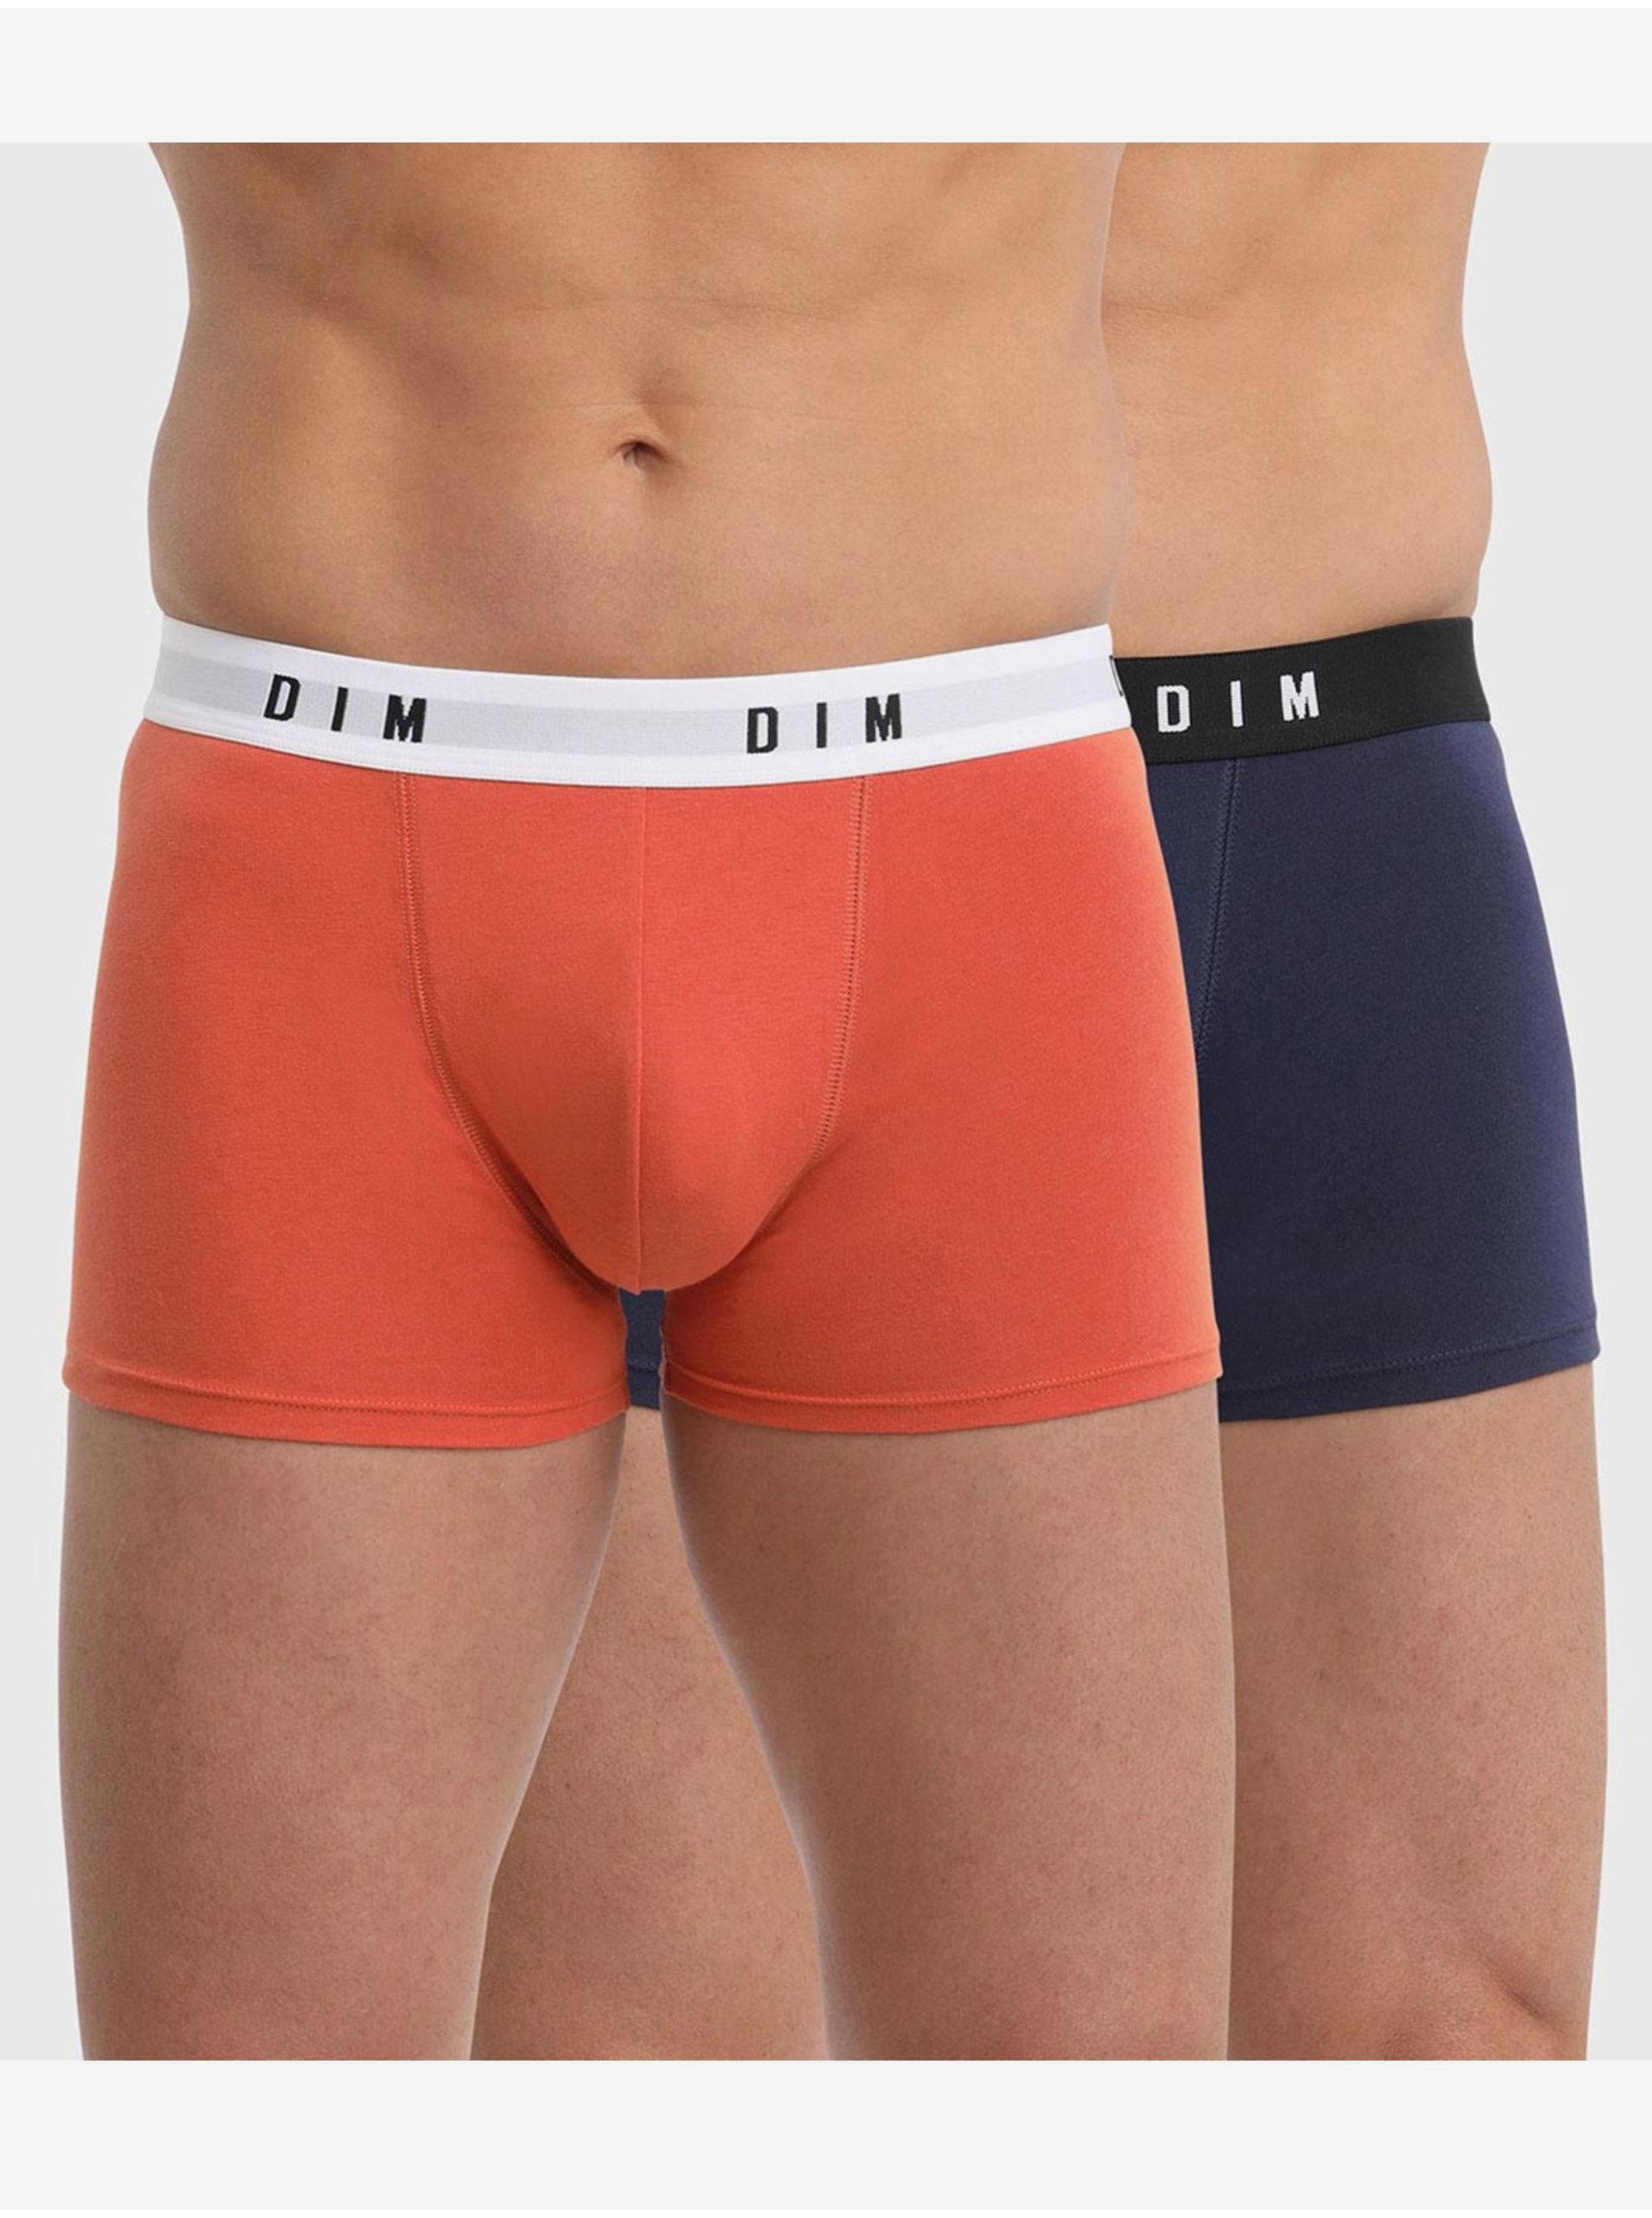 E-shop Sada dvou pánských boxerek v oranžové a tmavě modré barvě Dim BOXER ORIGINAL 2x